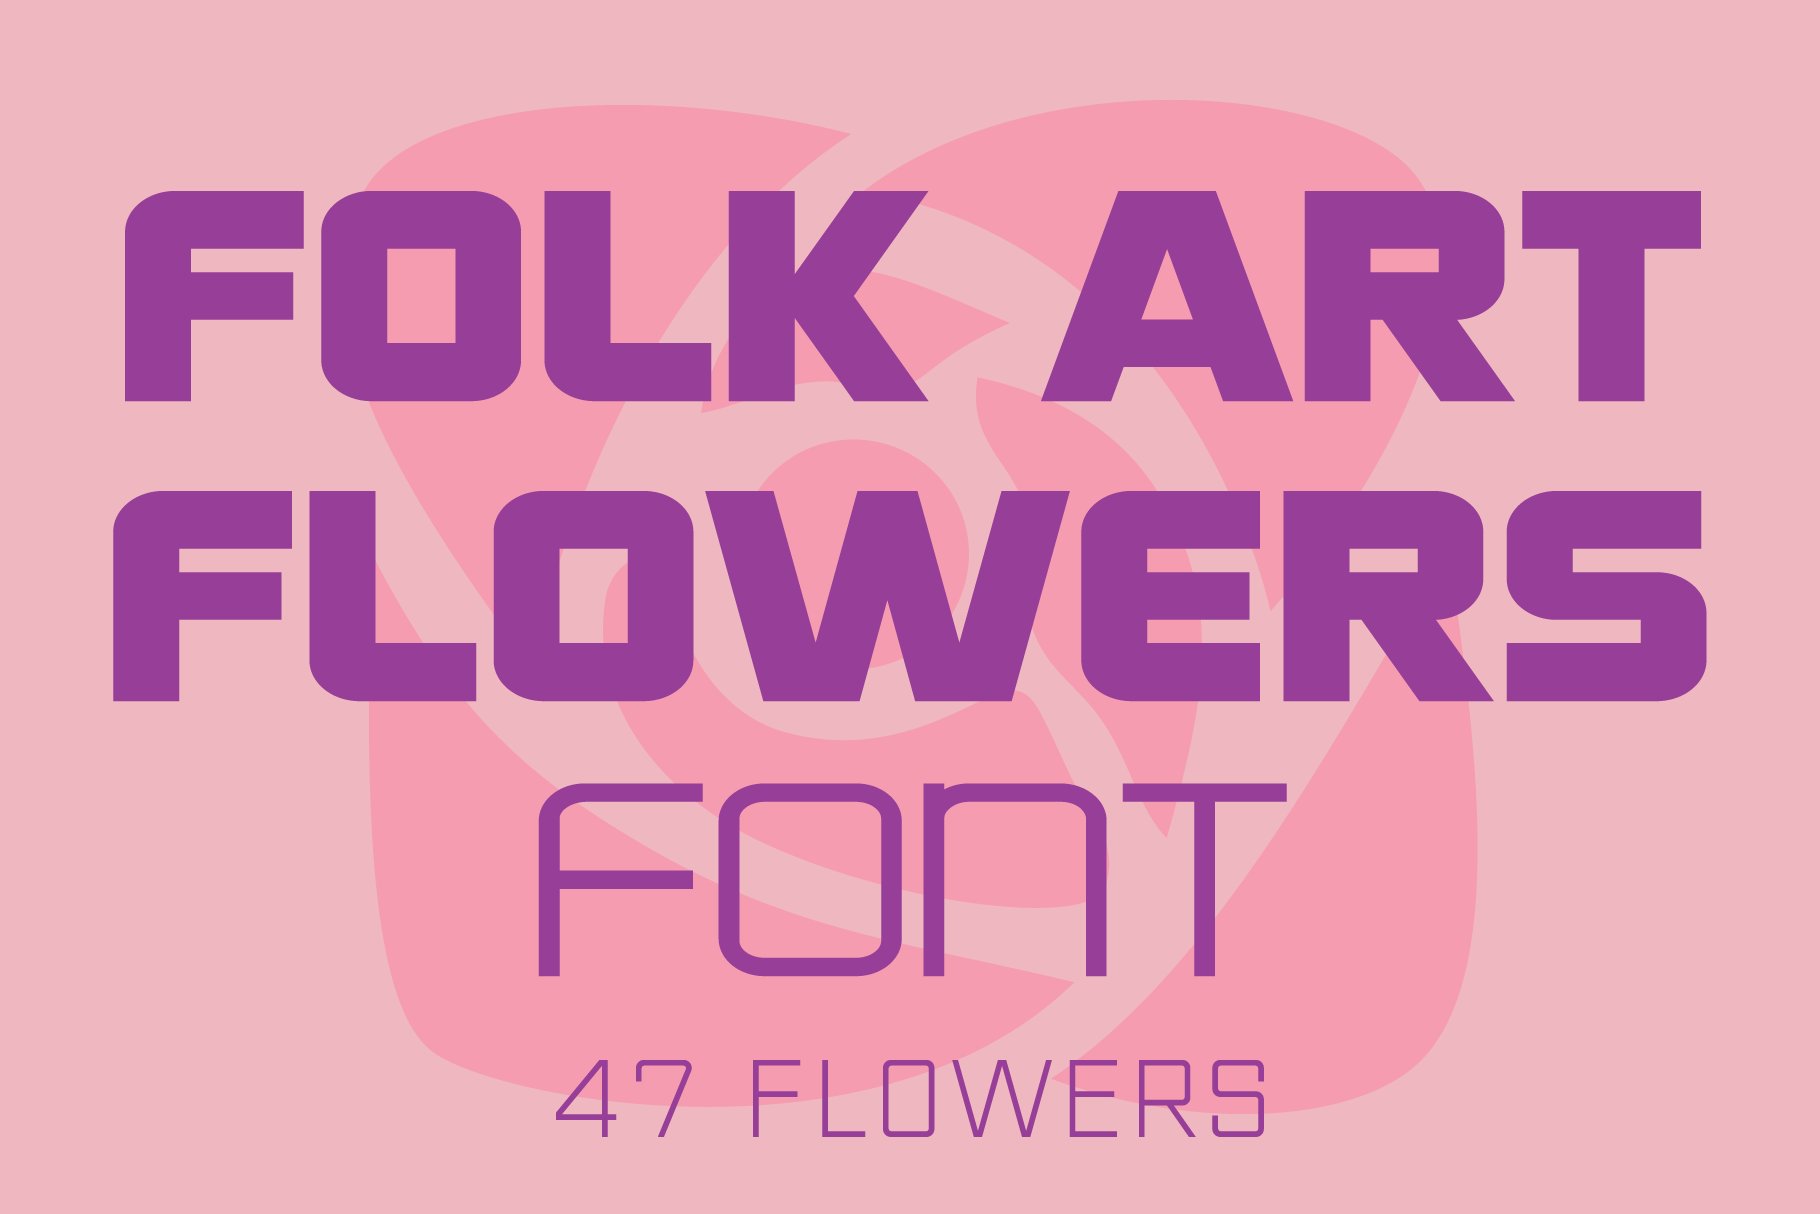 Folk Art Flowers Font cover image.